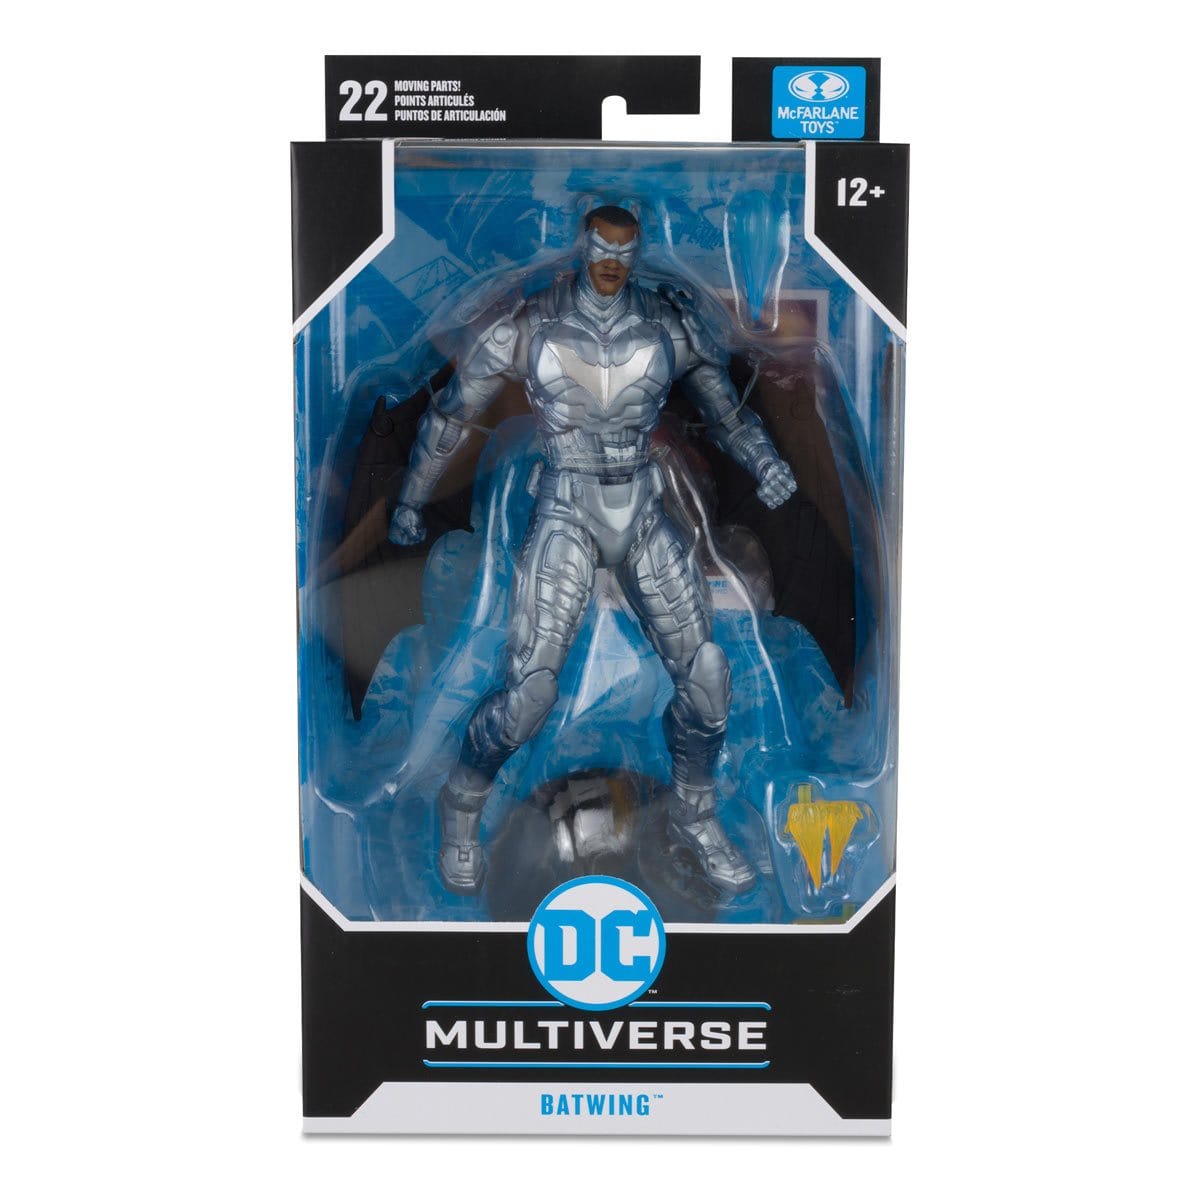 McFarlane Toys: DC Multiverse - Batwing